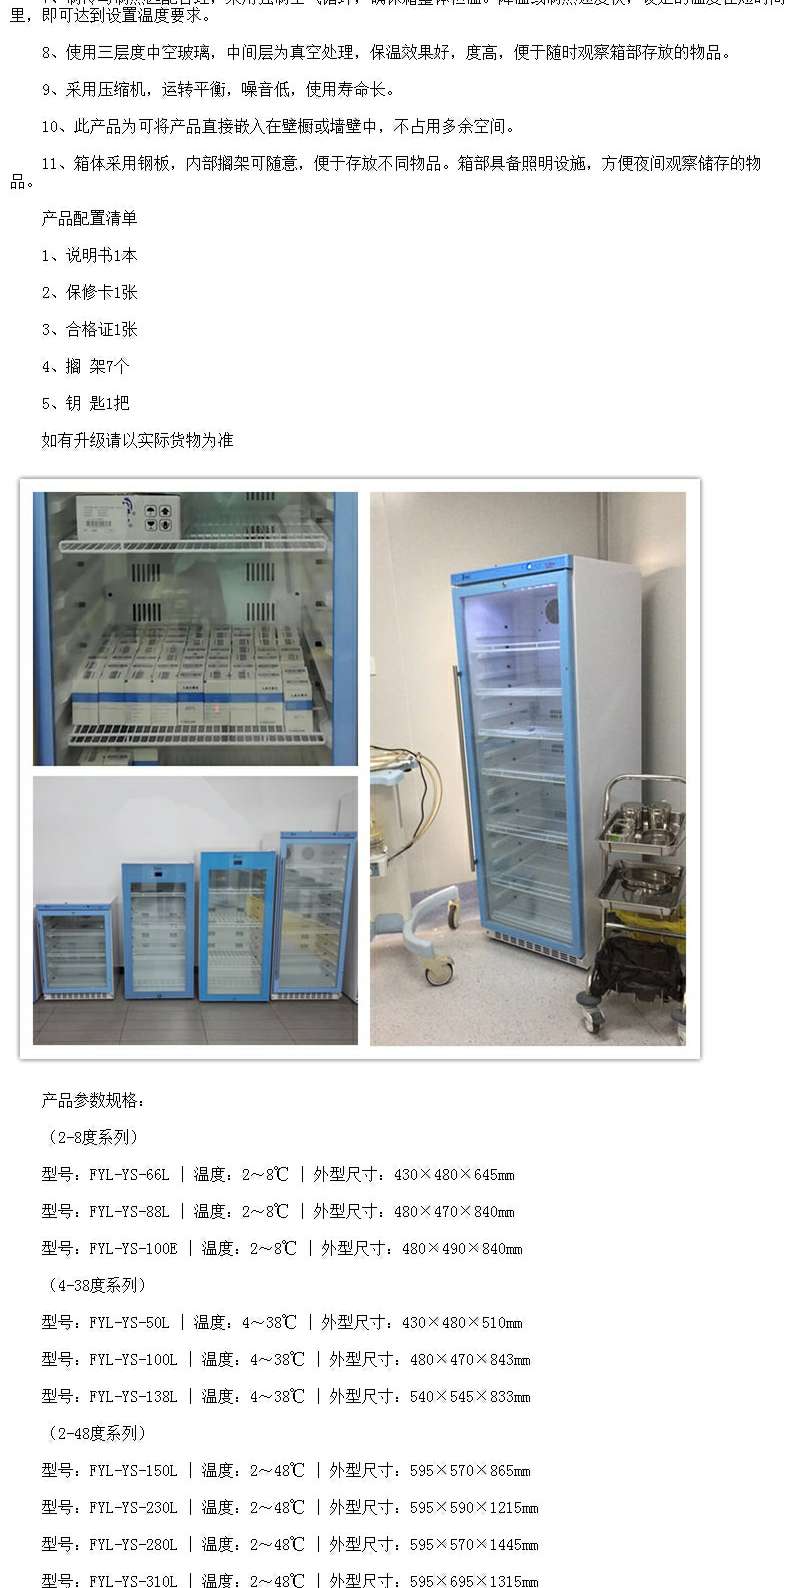 福意联挂壁式手术室恒温柜FYL-YS-230L净化手术室安装